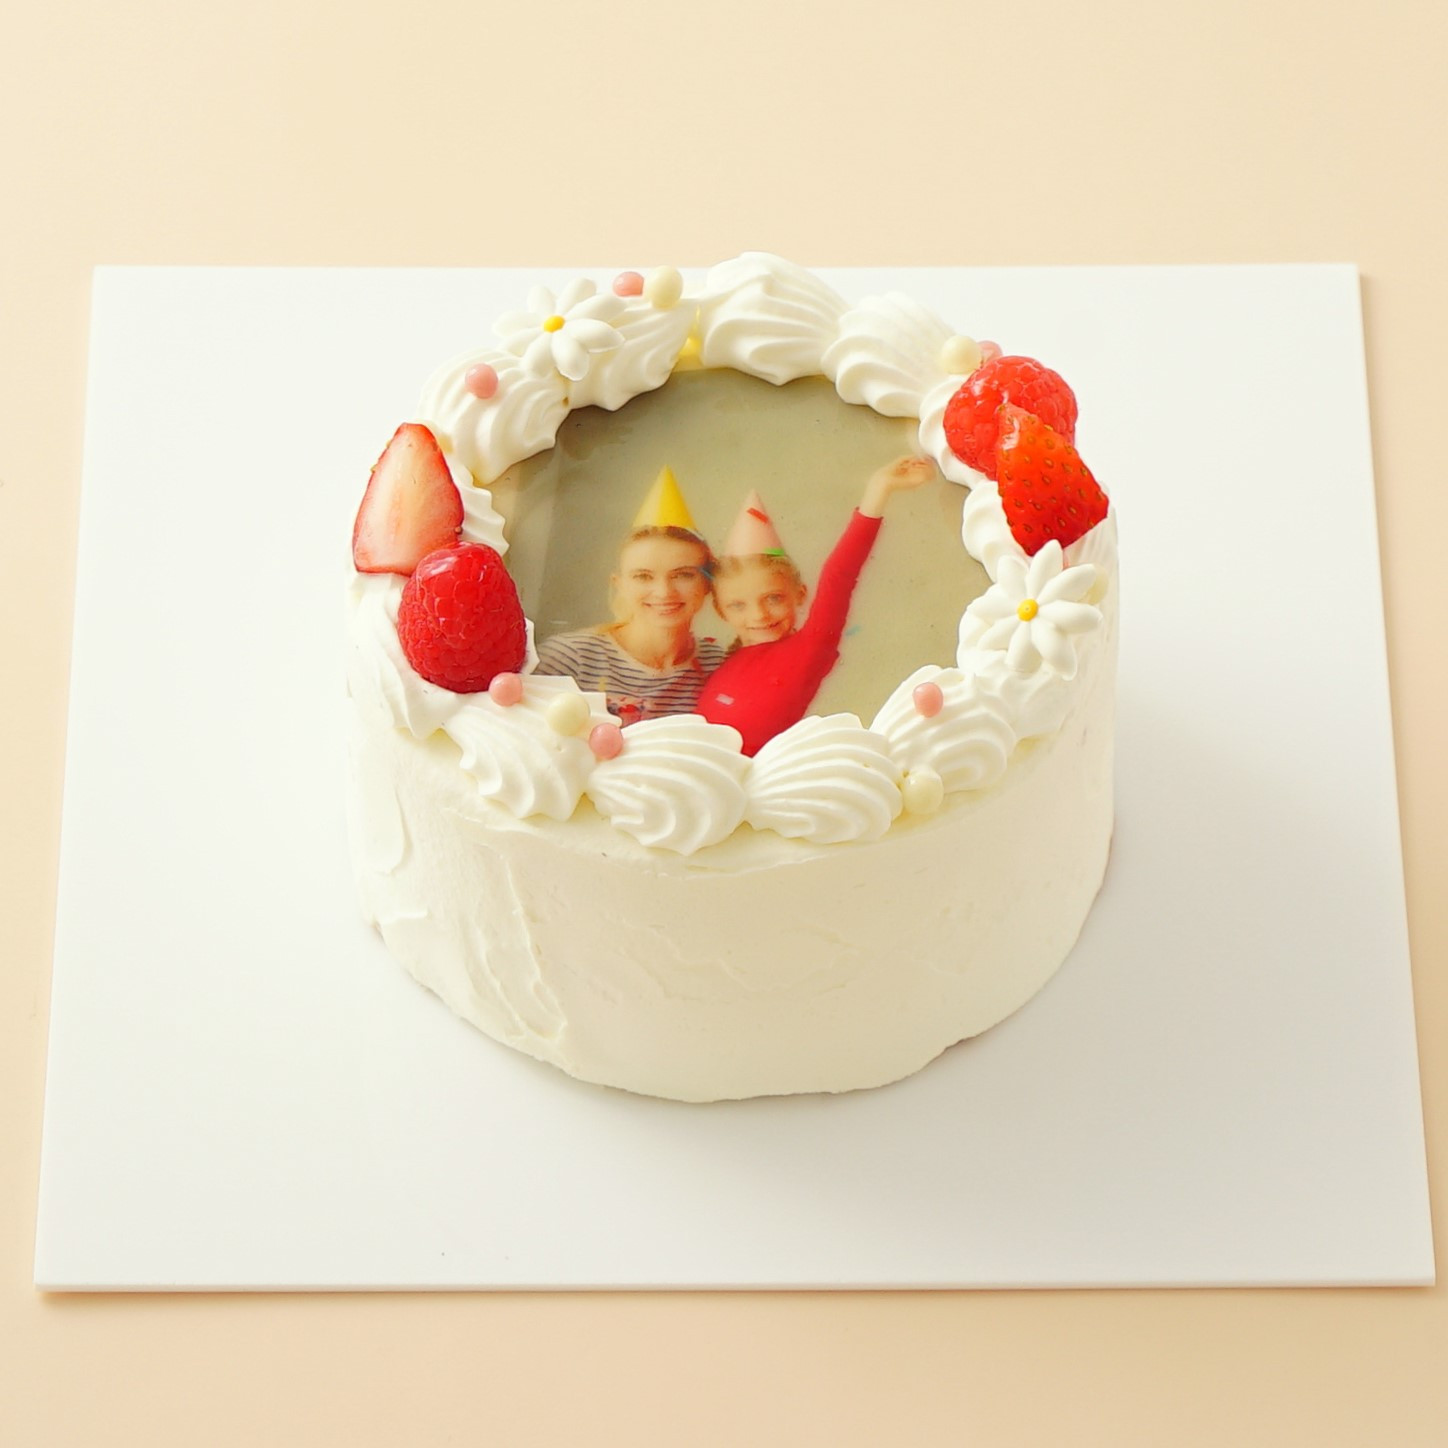 丸写真ケーキ 苺×パール 4号(3~4名様向け) 1